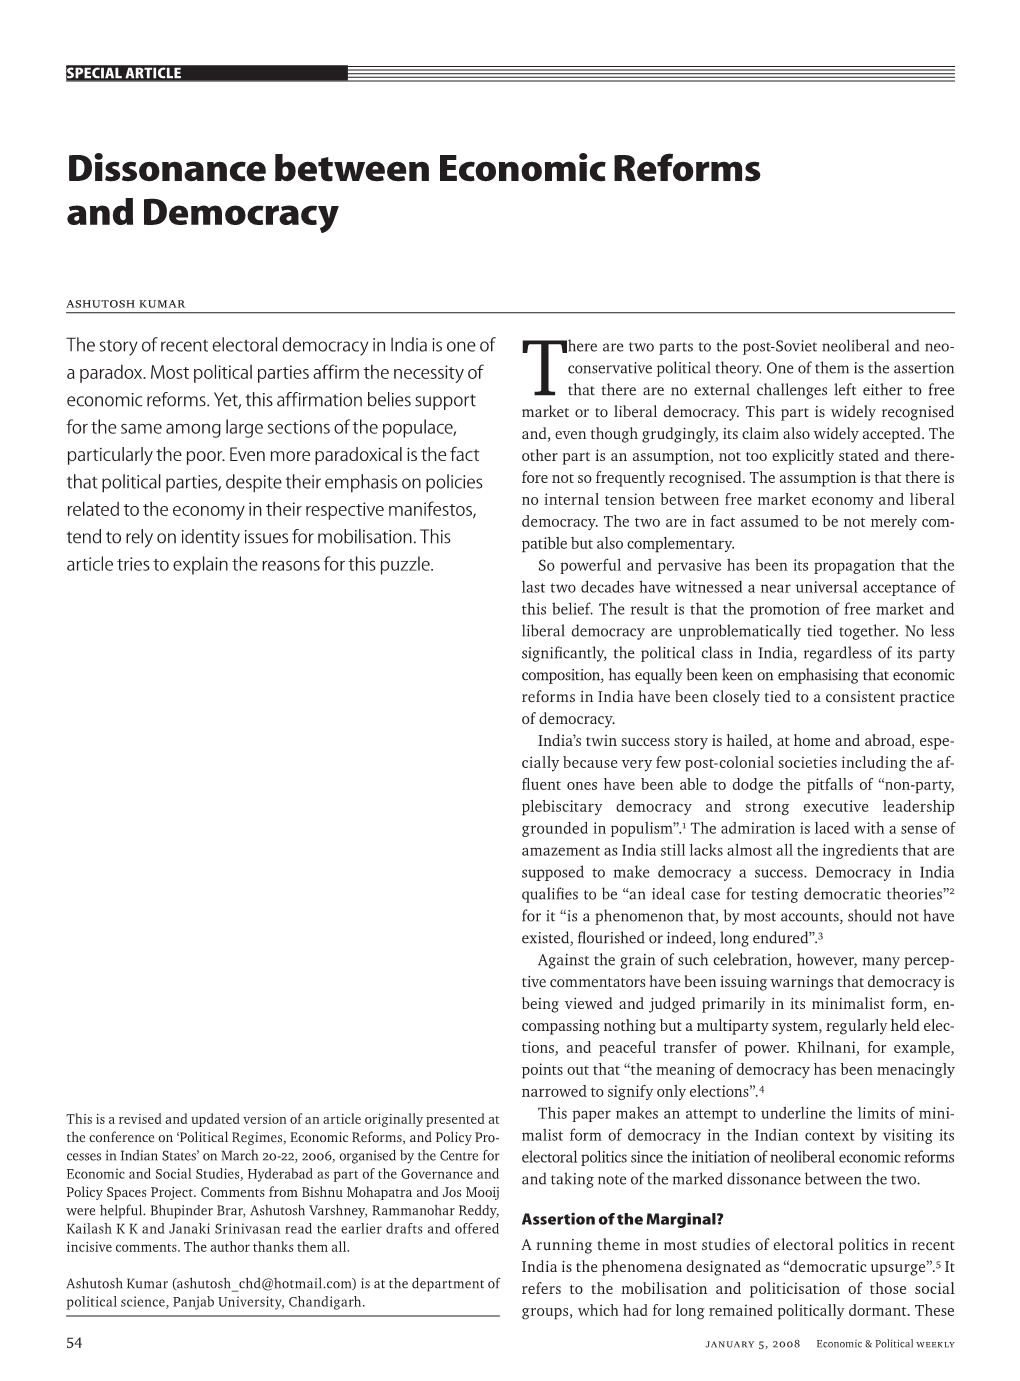 Dissonance Between Economic Reforms and Democracy